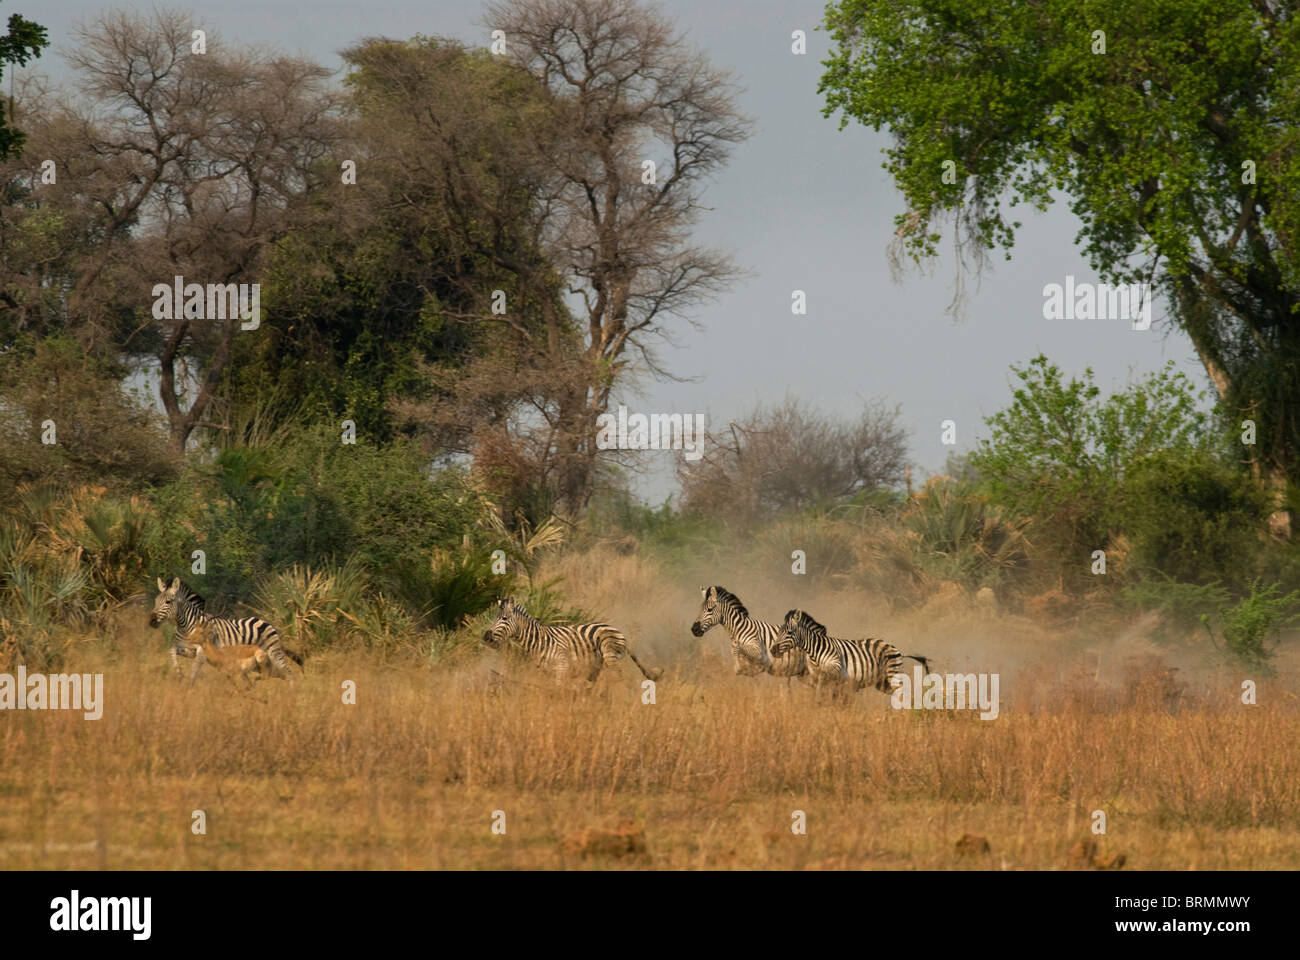 Les zèbres courir un sprint loin d'une zone boisée Banque D'Images